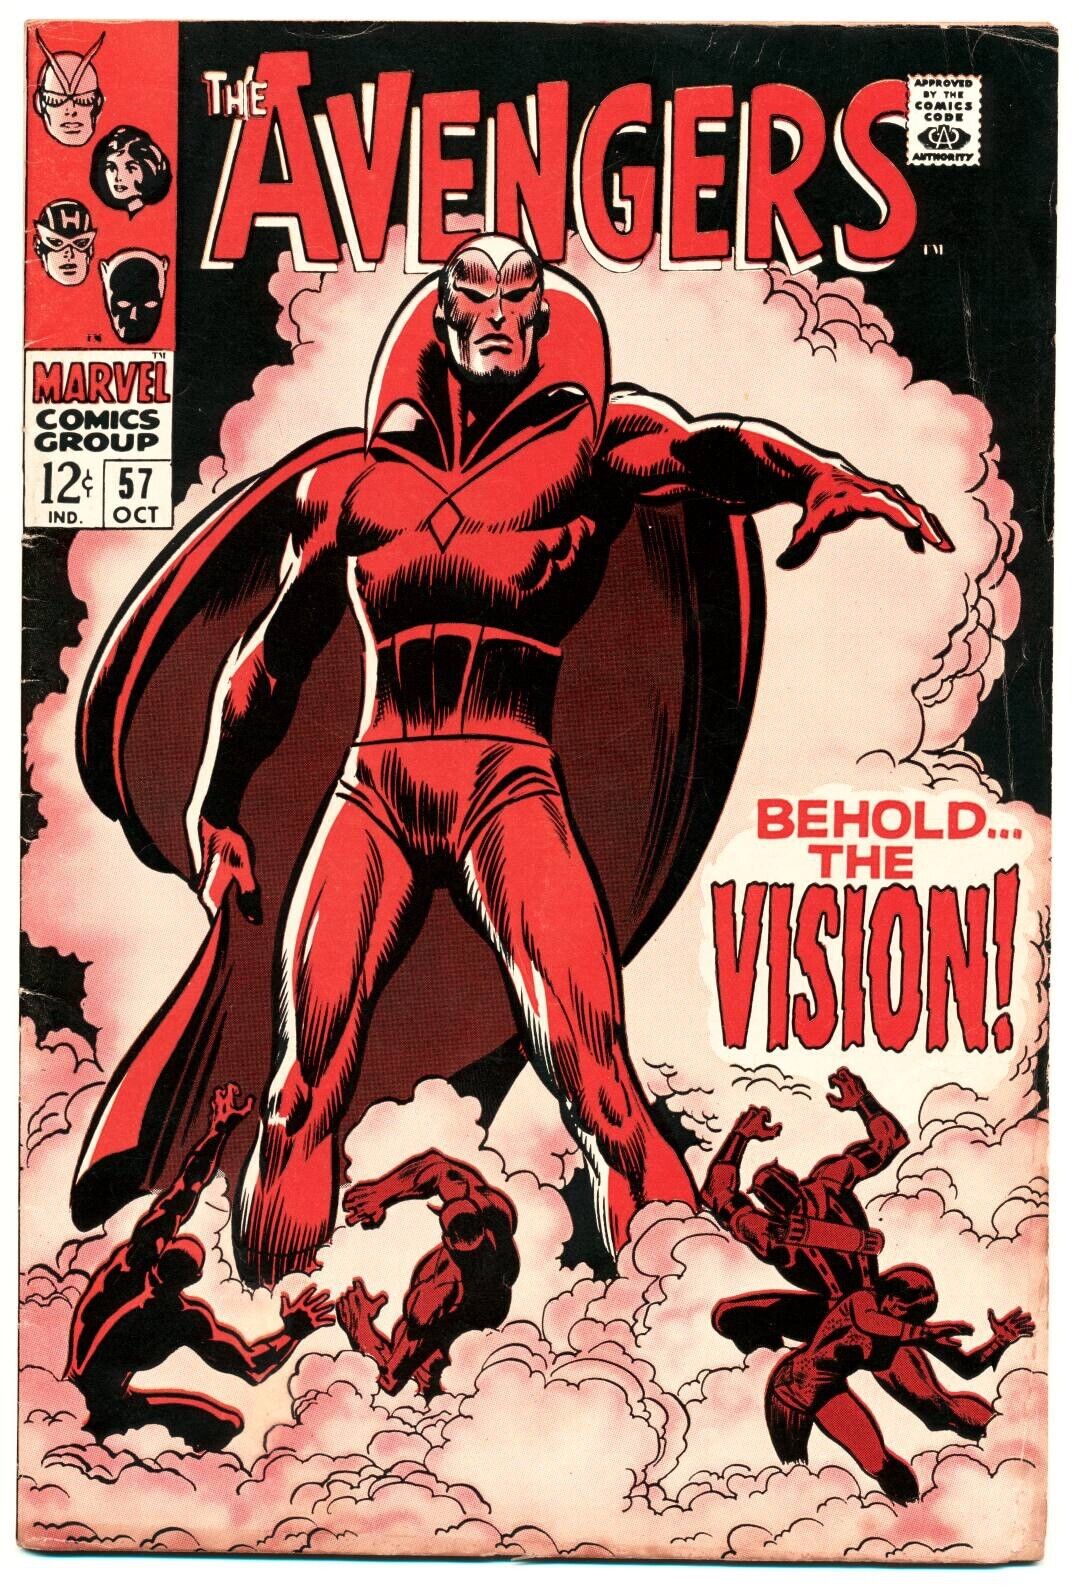 AVENGERS #57 VG, 1st app. Vision, Marvel Comics 1968